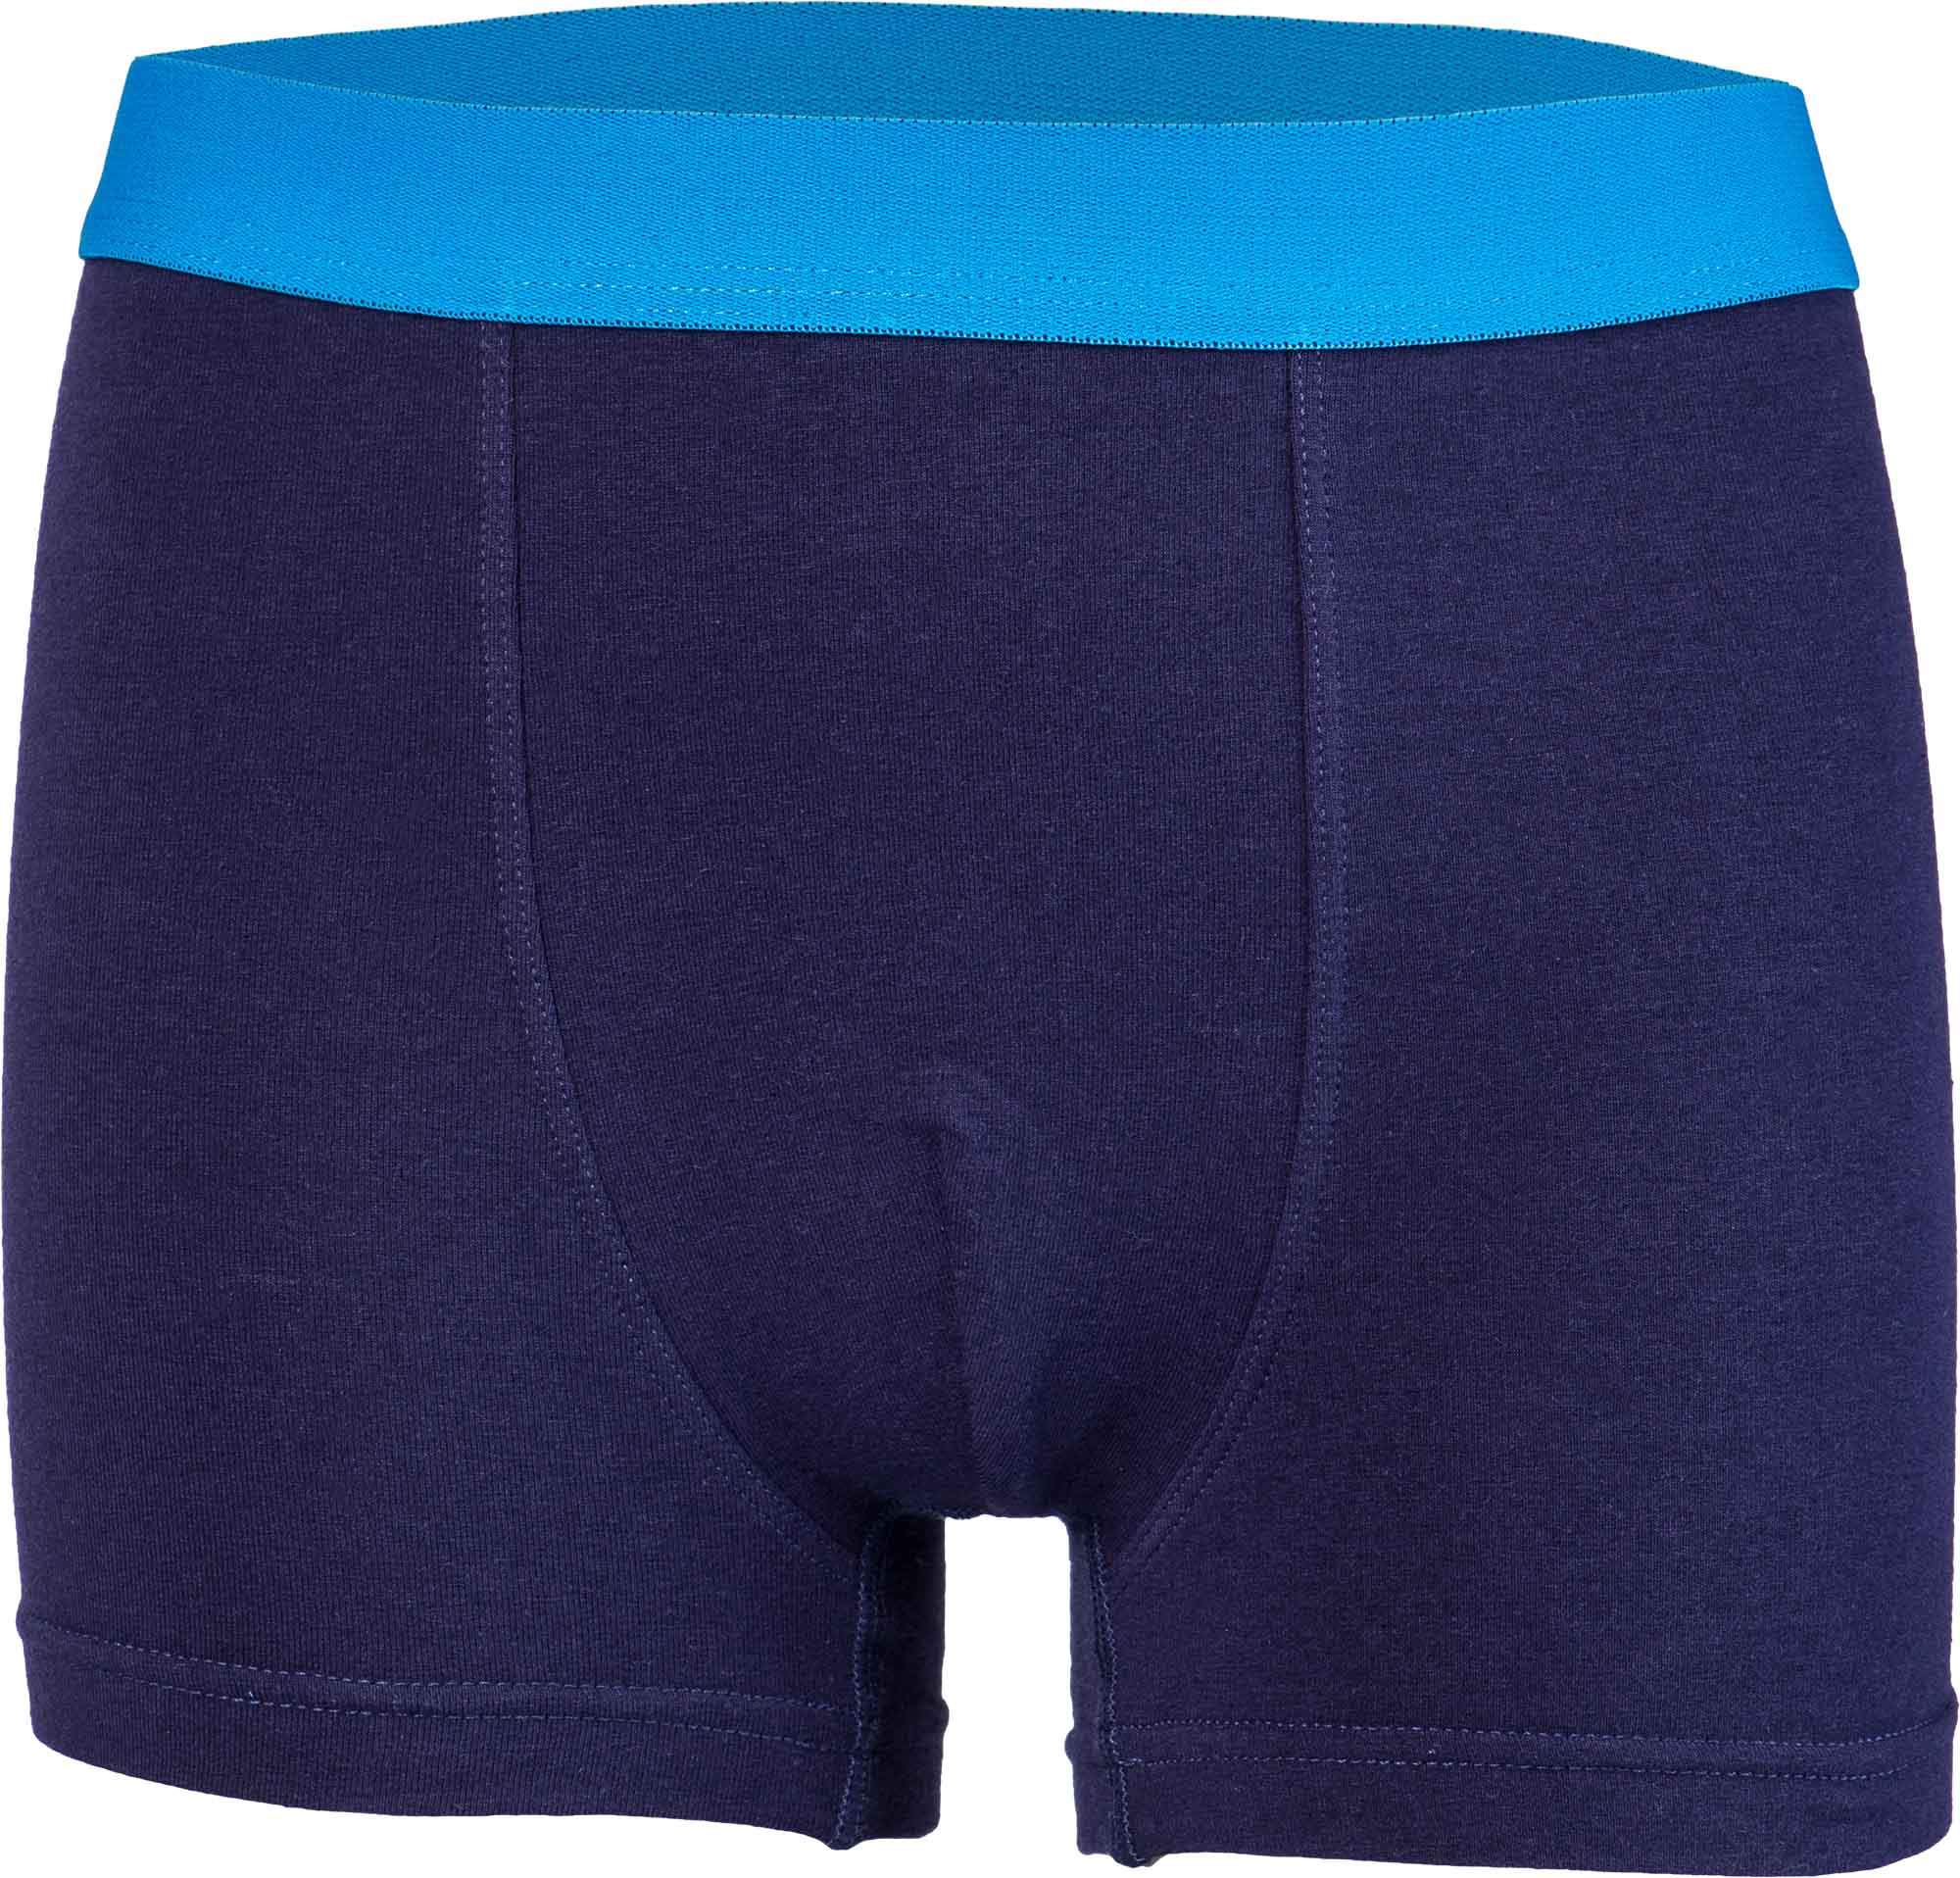 Boys' boxer shorts